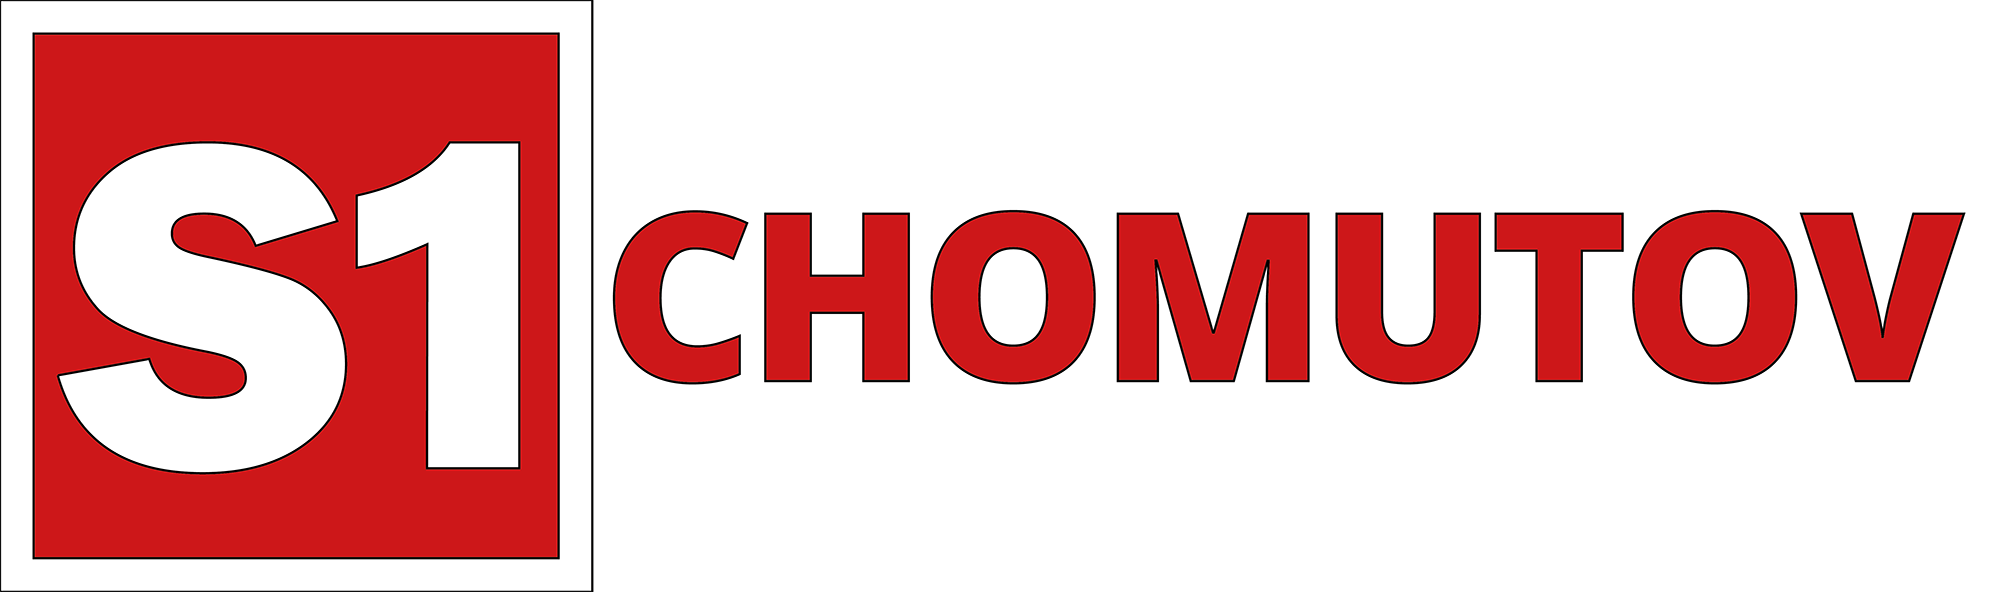 S1 Chomutov Logo